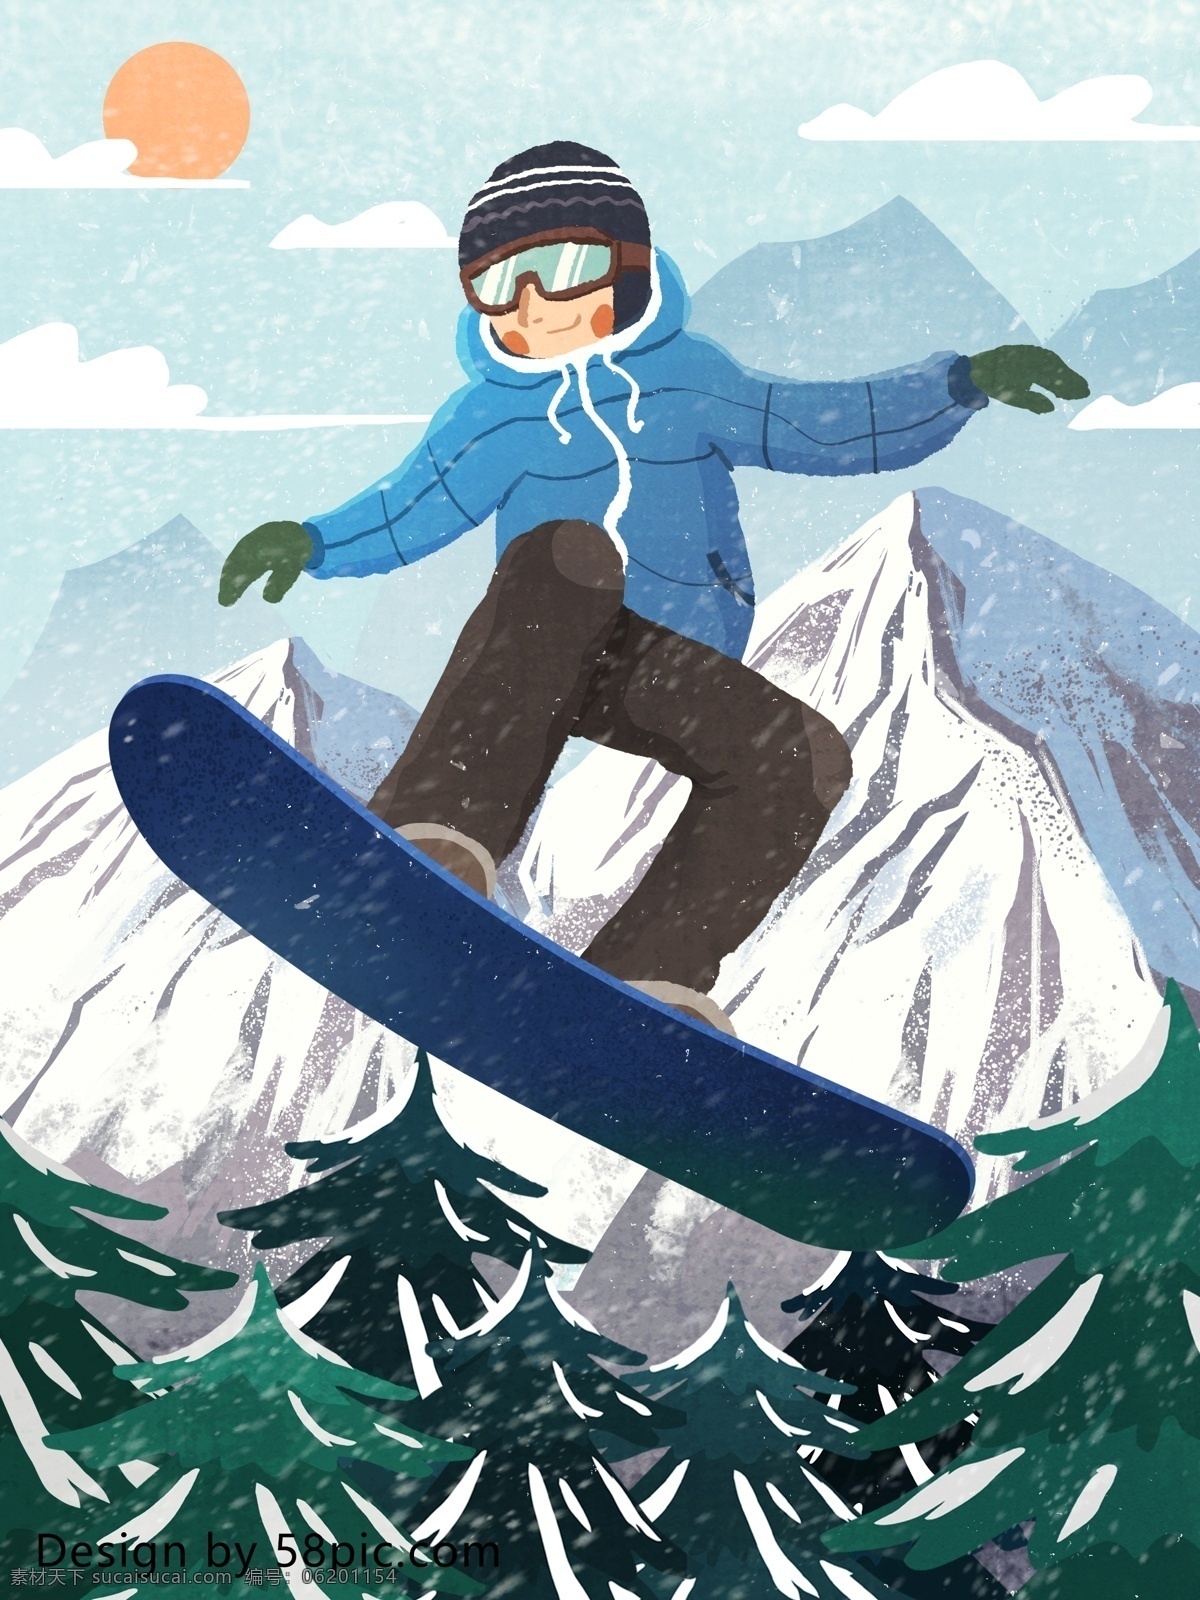 少年 山中 滑板 滑雪 肌理 写实 原创 手绘 插画 滑板少年 少年滑雪 滑雪场景 山中滑雪 原创手绘 户外滑雪